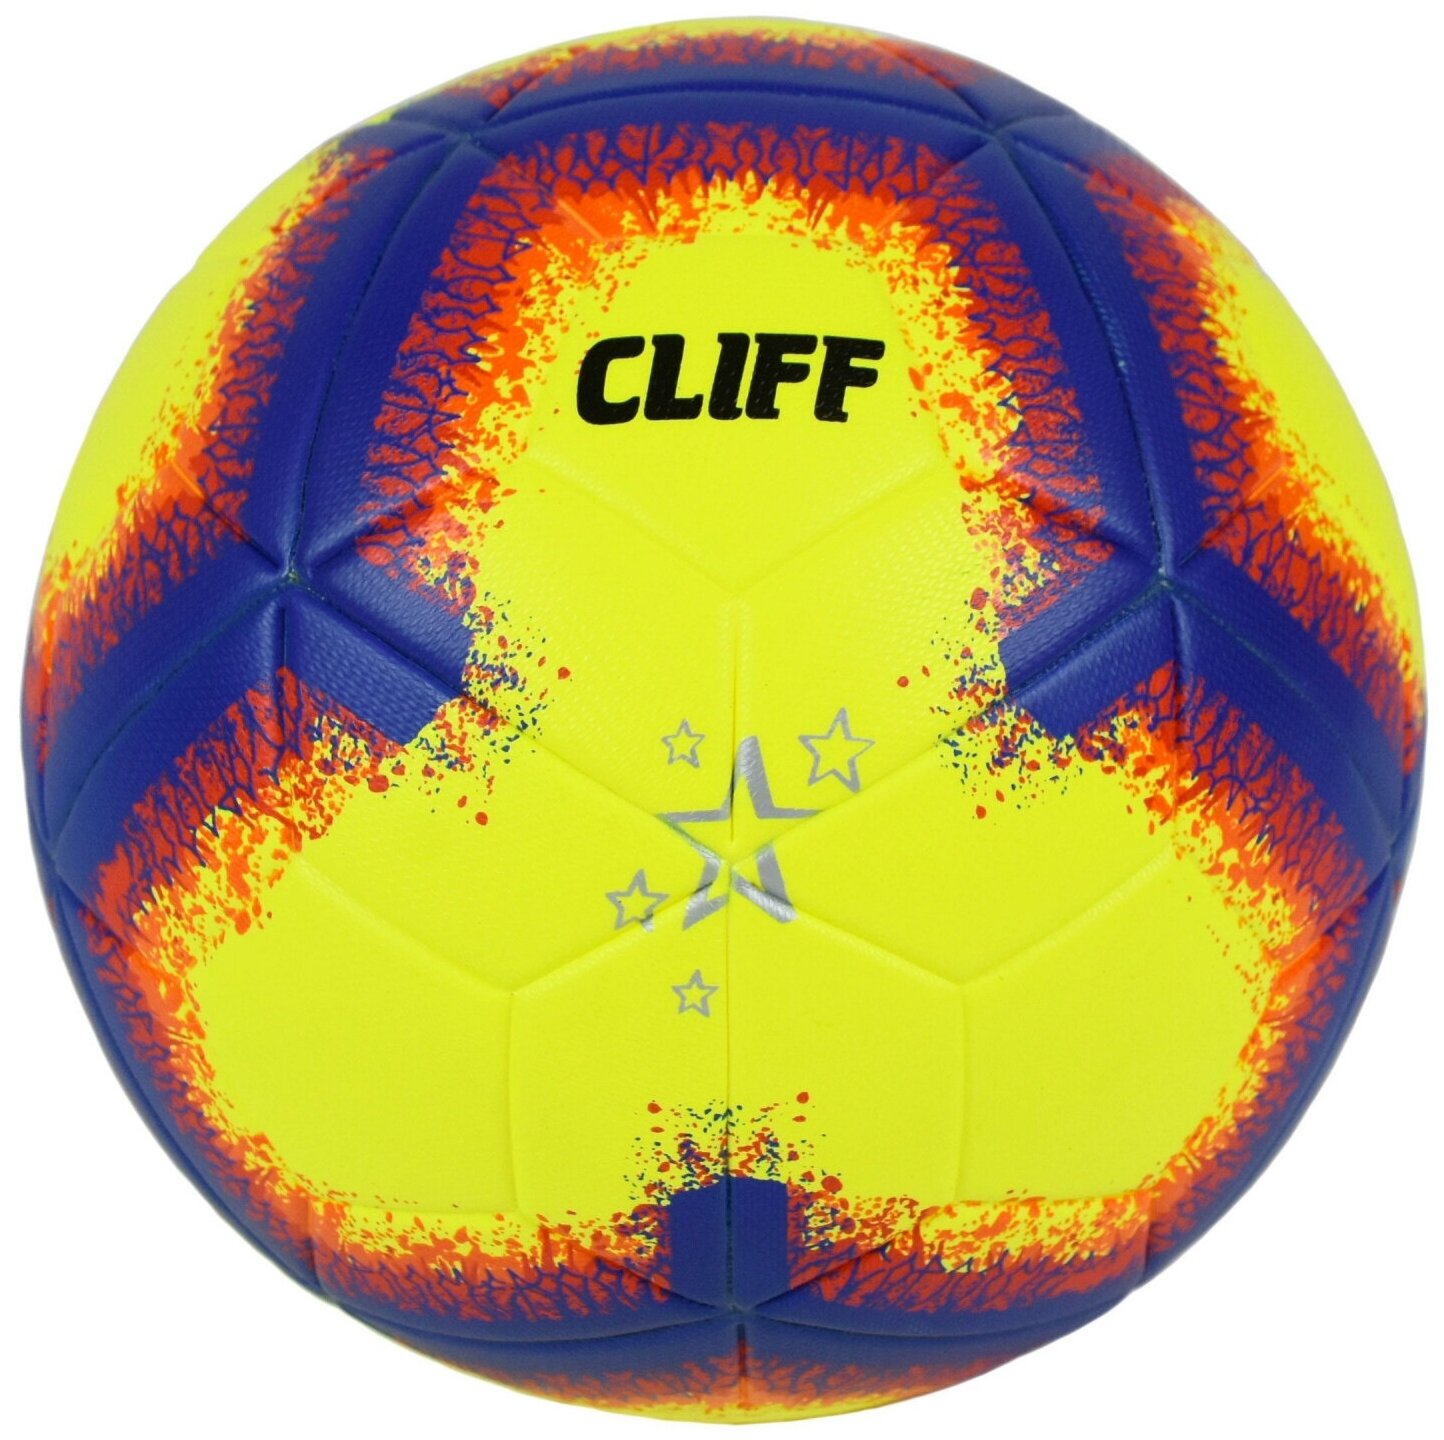 Мяч футбольный CLIFF EXP SC8131, 5 размер, PU клееный, желто-синий